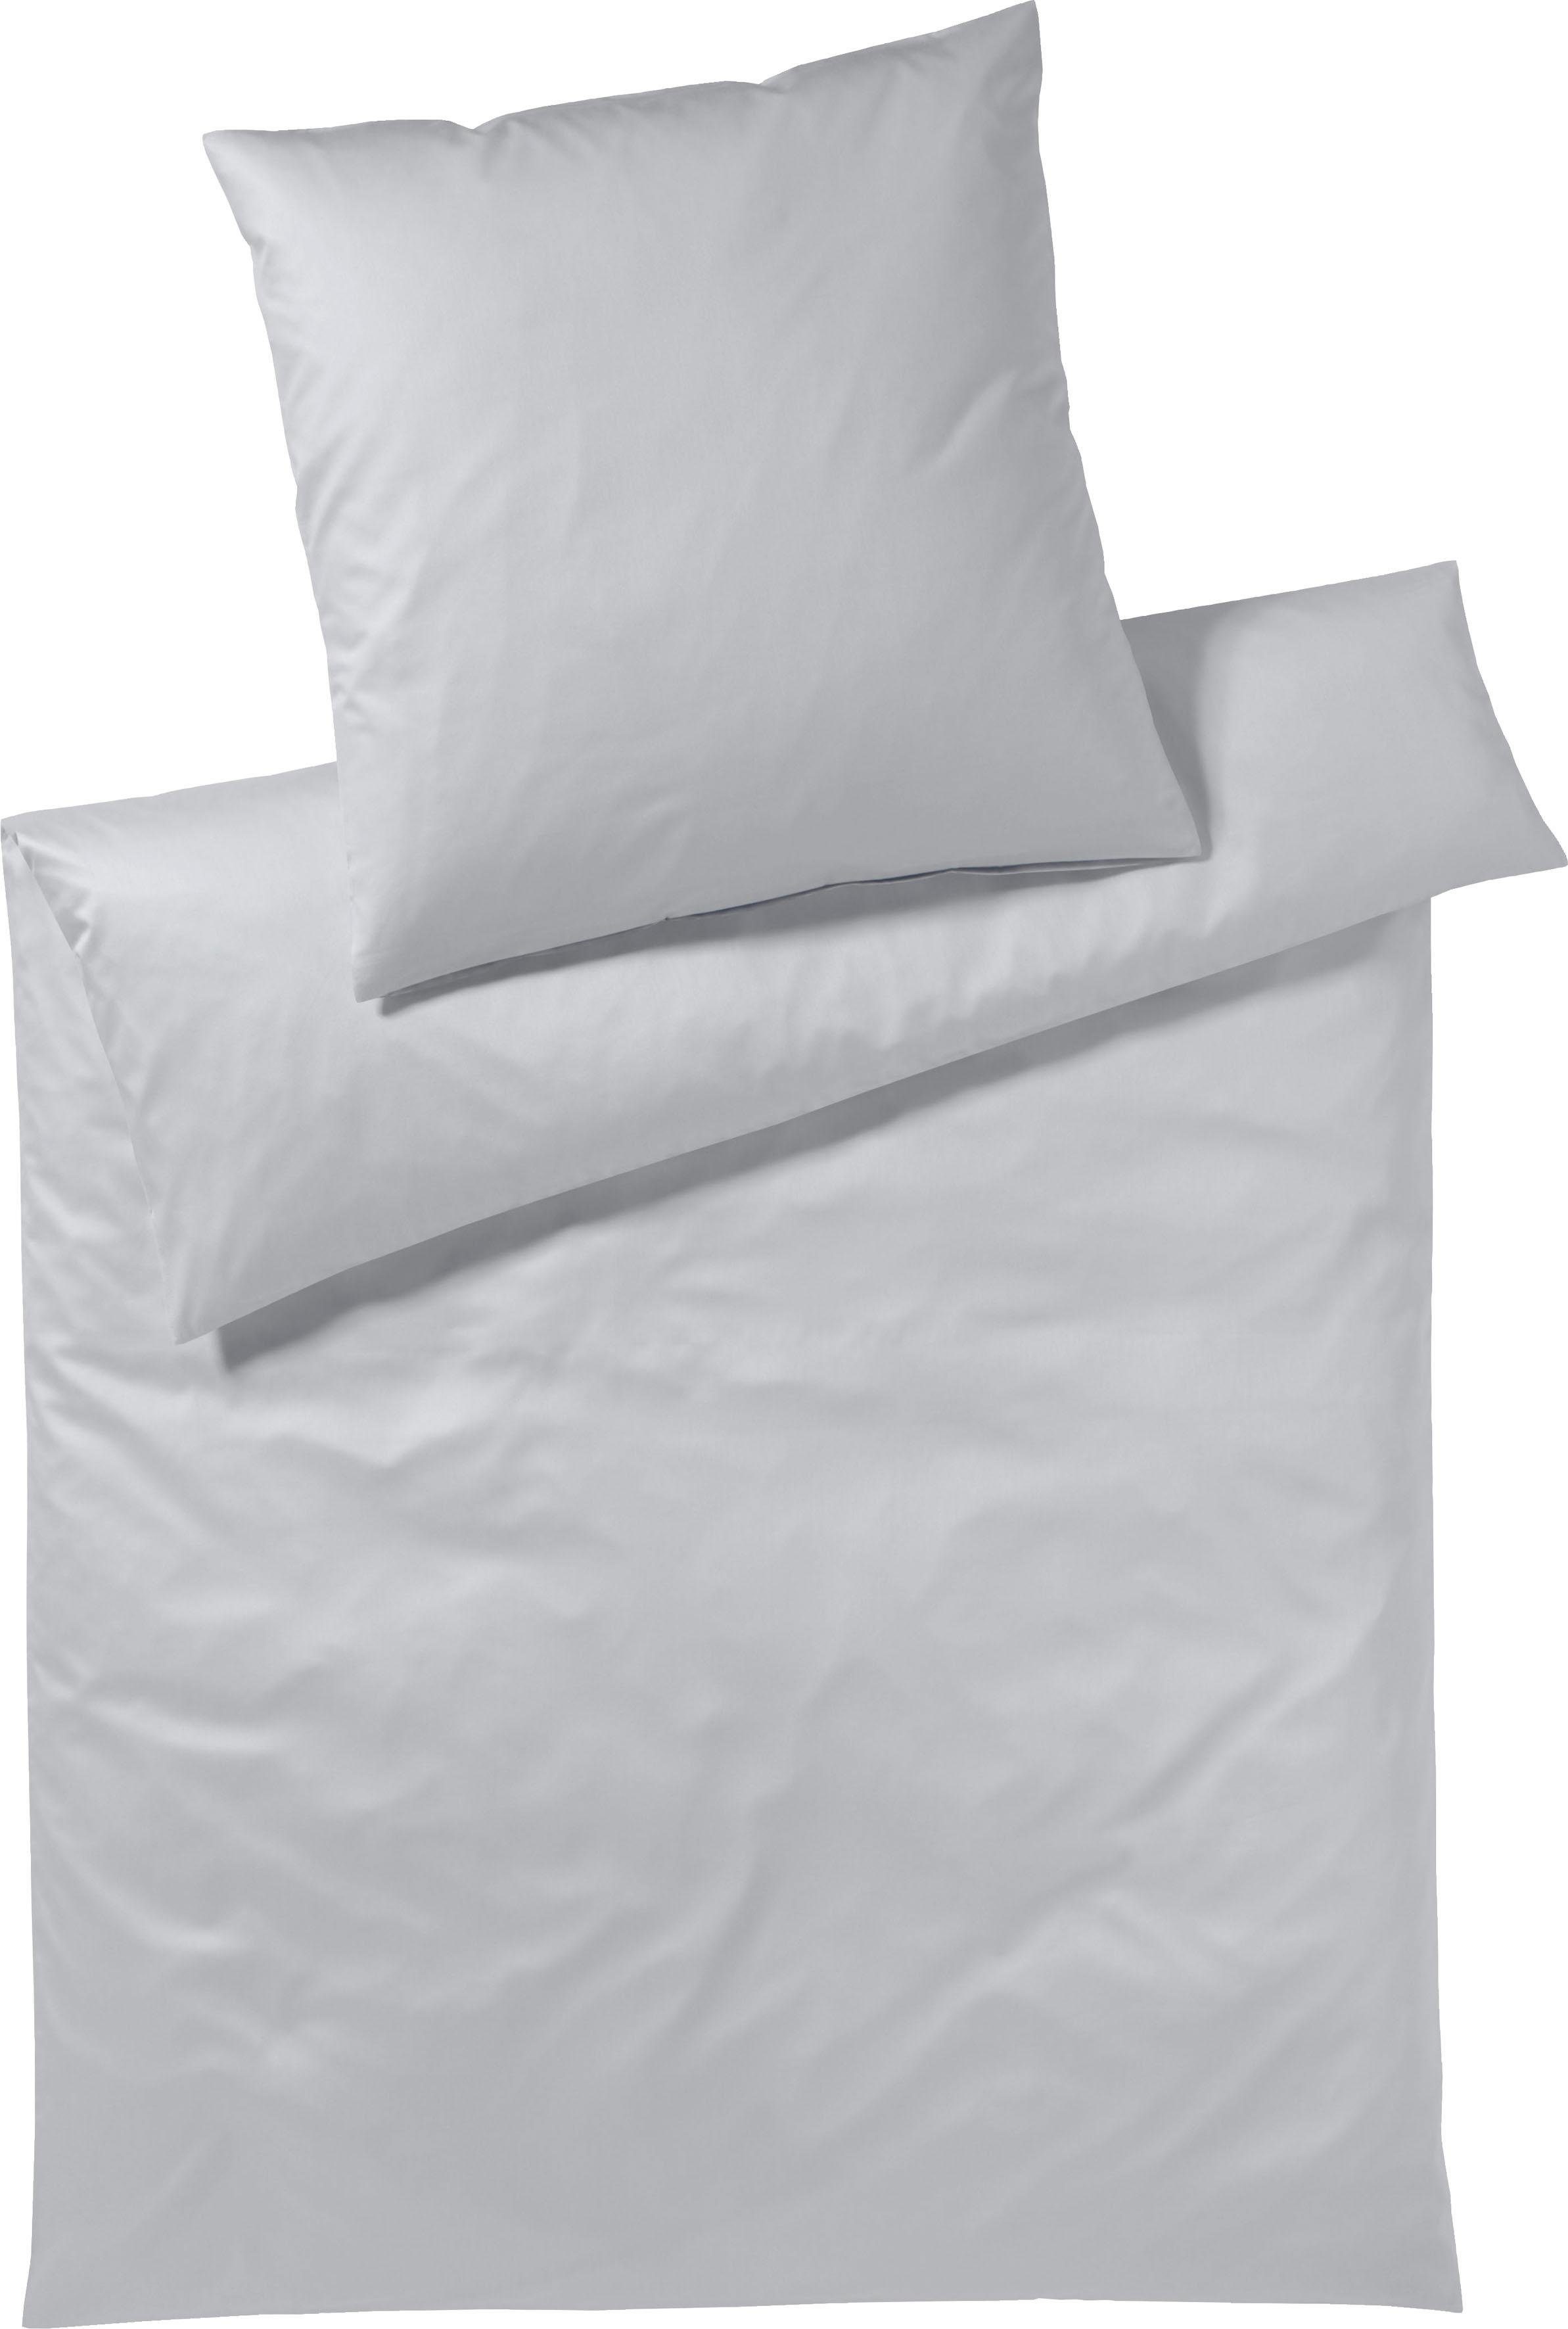 Bettwäsche Pure & Simple Uni in Gr. 135x200, 155x220 oder 200x200 cm, Yes for Bed, Mako-Satin, 3 teilig, Bettwäsche aus Baumwolle, zeitlose Bettwäsche mit seidigem Glanz